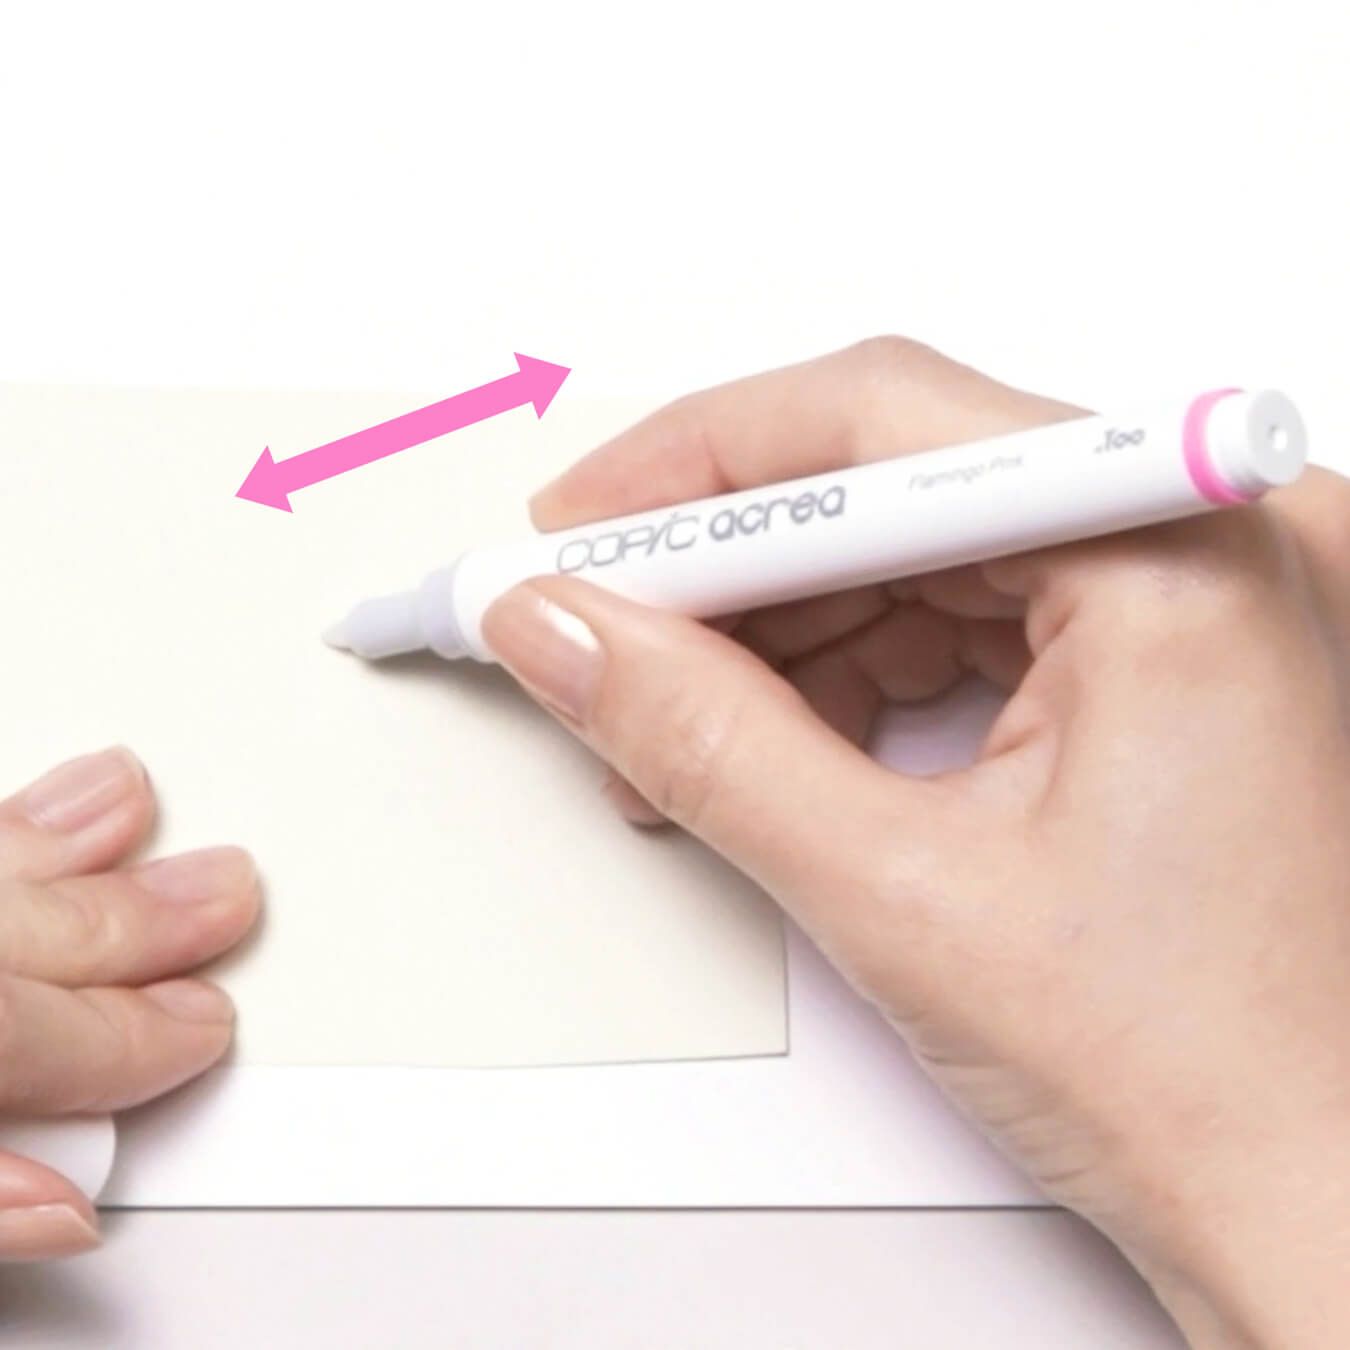 キャップを取って、不要な紙の上でインクが出てくるまでペン先を上下に押し込んでください。